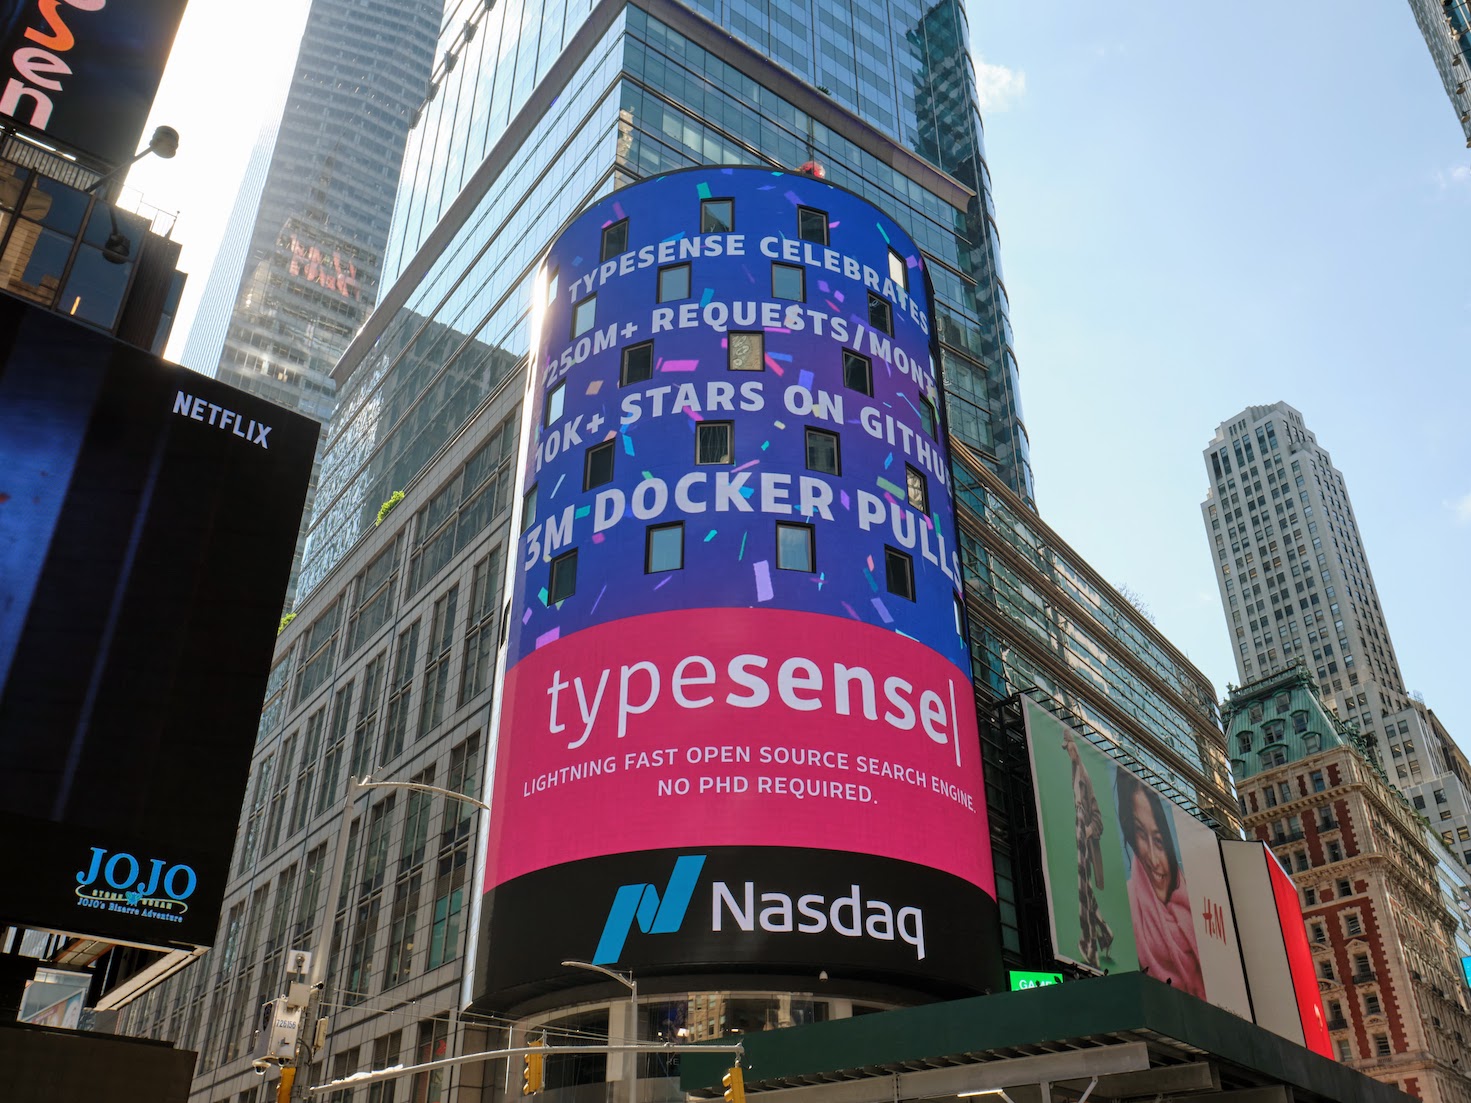 Typesense on Nasdaq Billboard